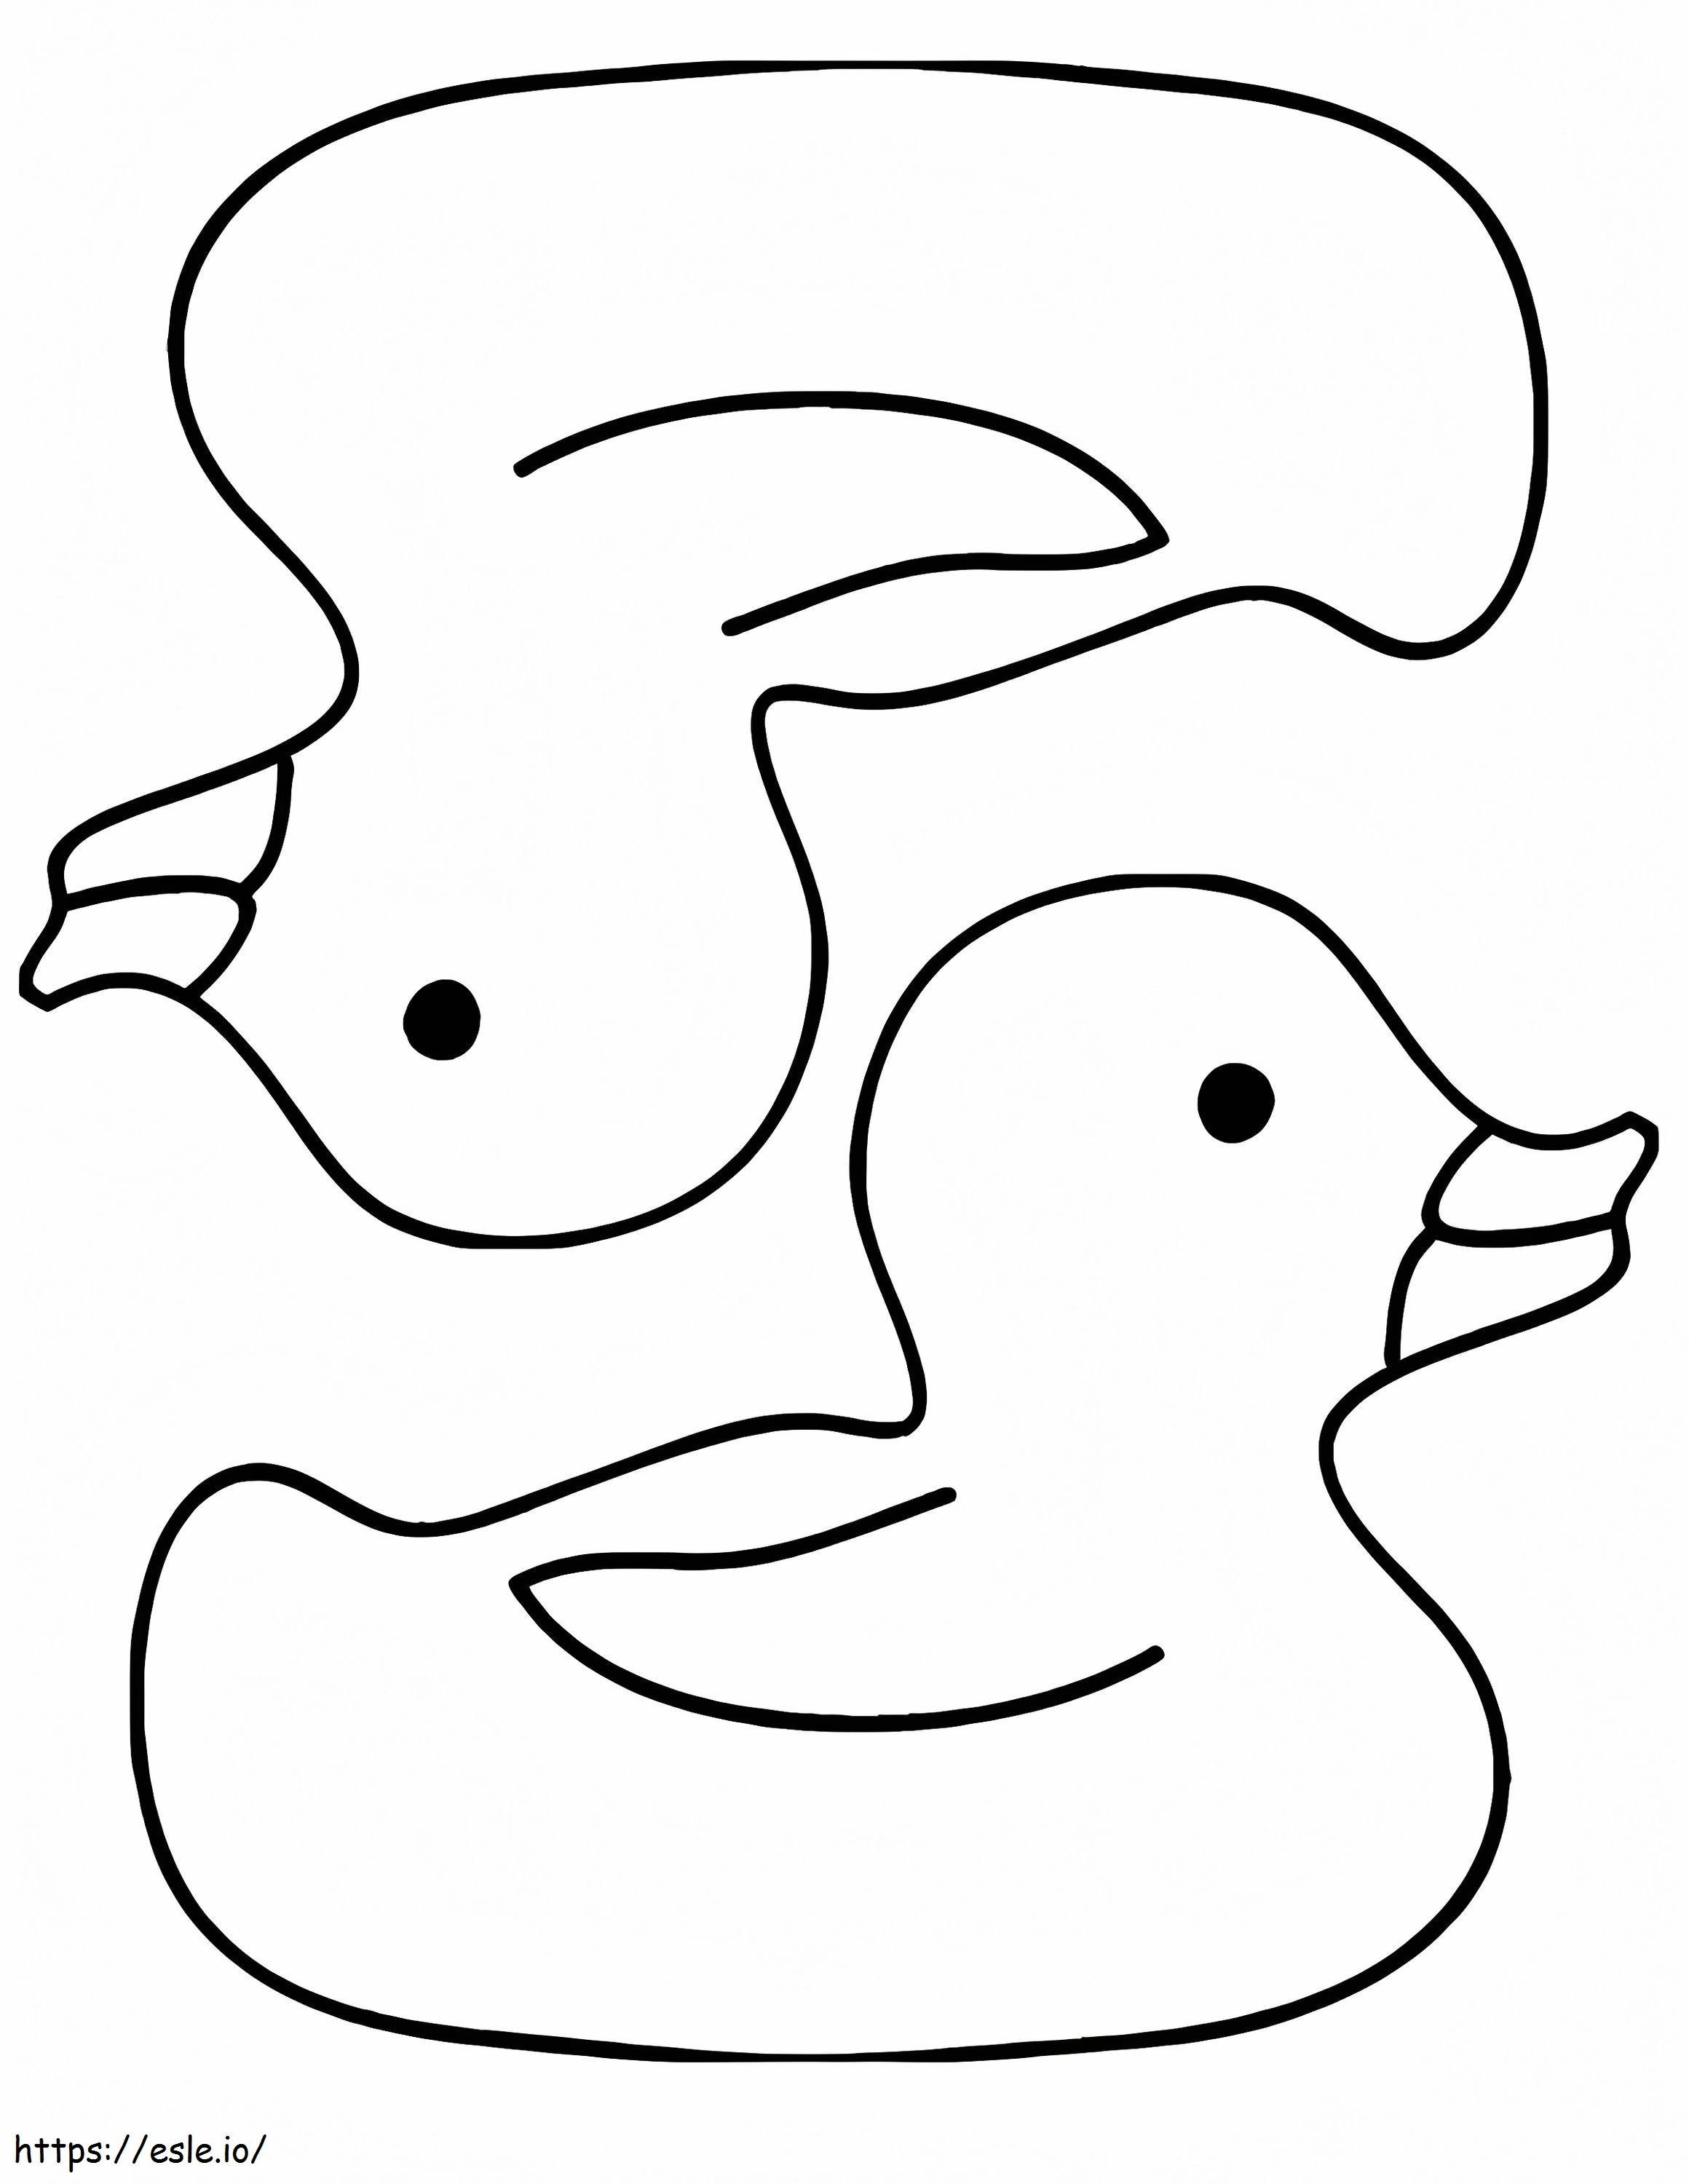 Coloriage Deux canards en caoutchouc à imprimer dessin